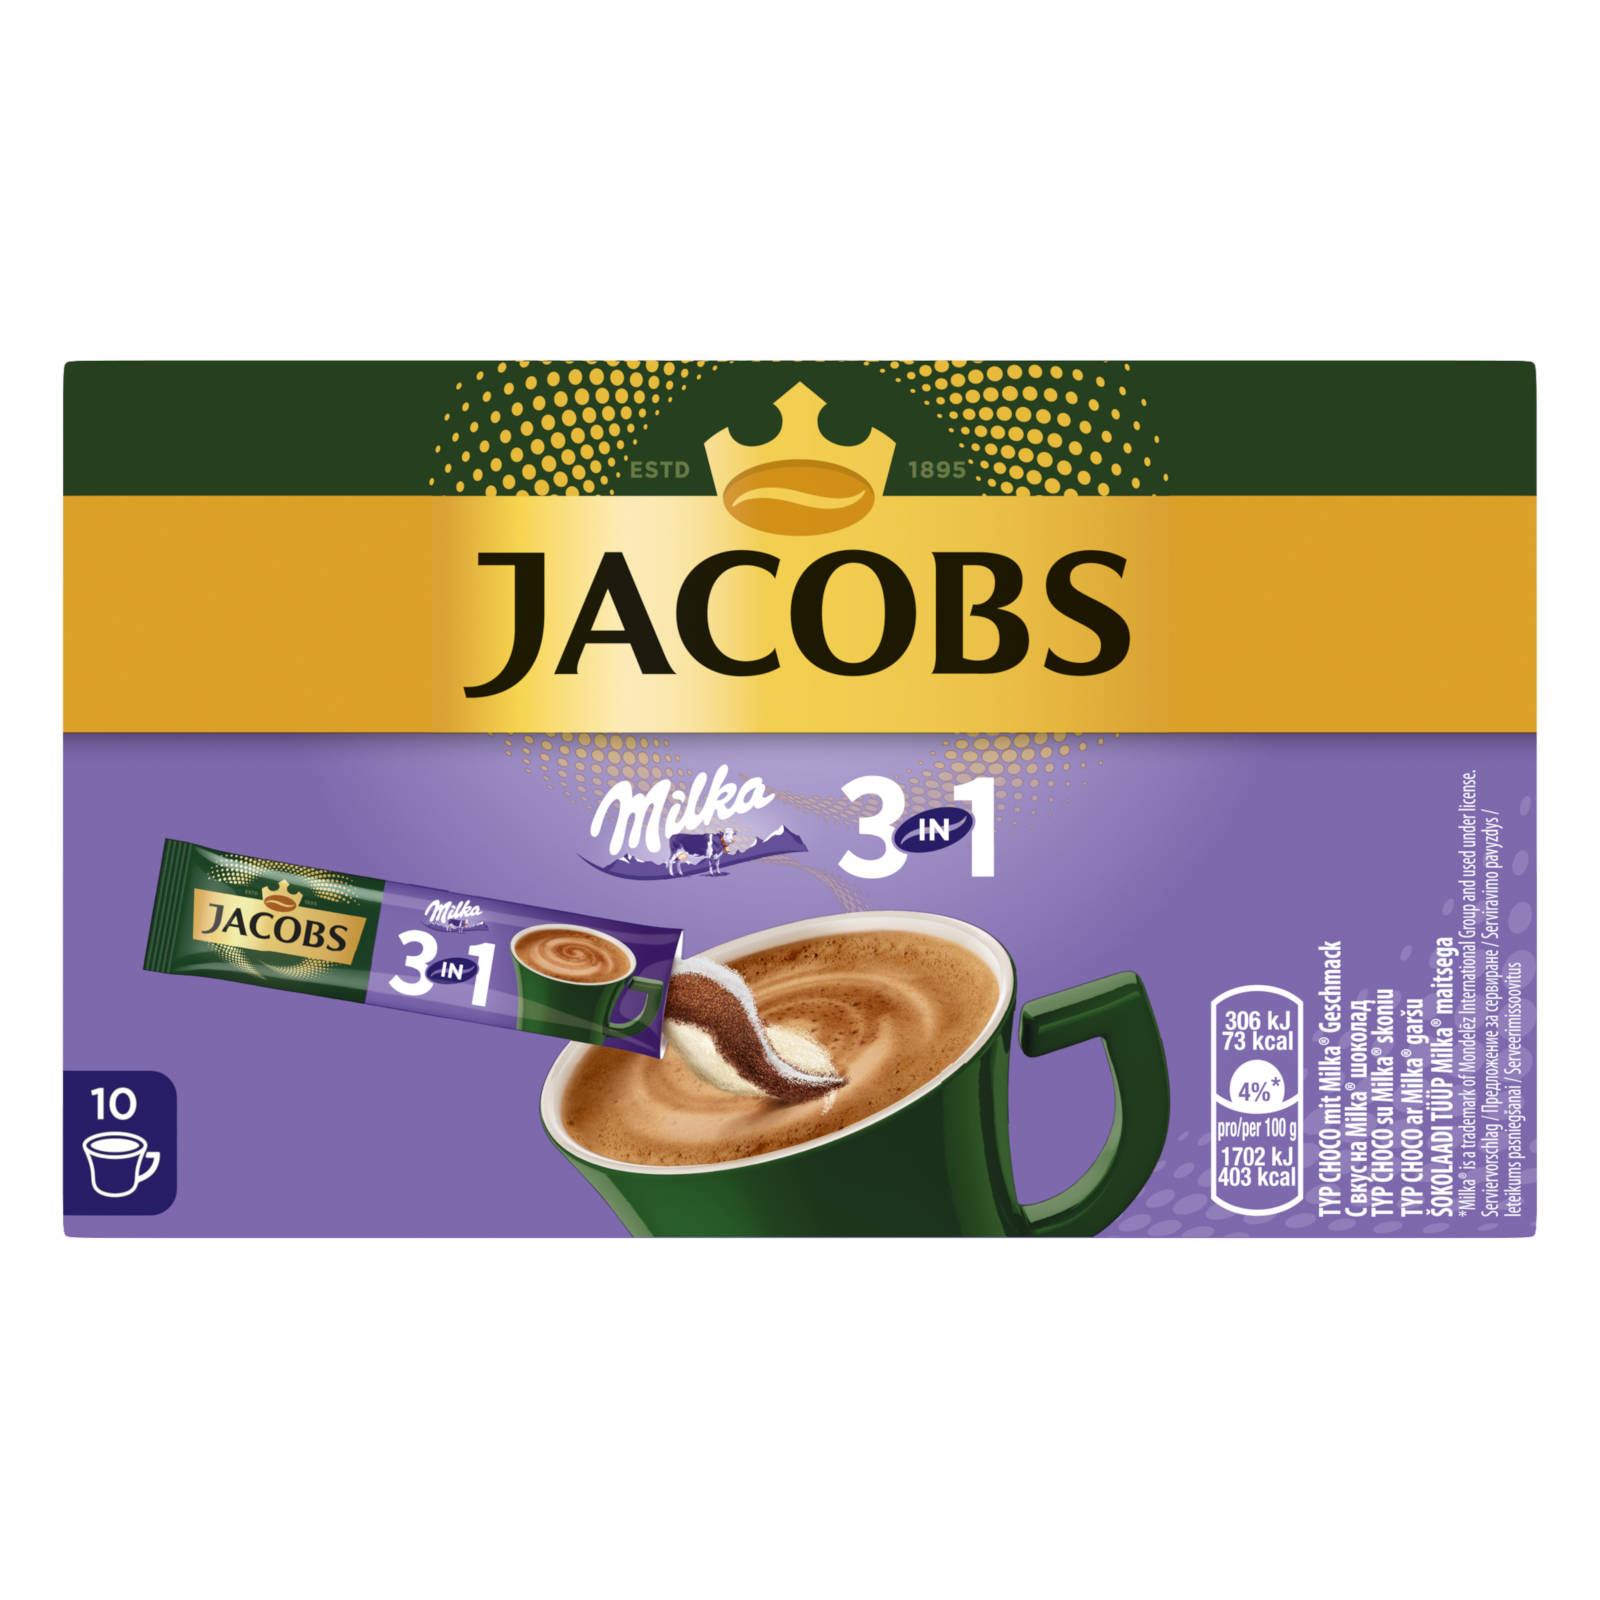 JACOBS 3in1 Milka®* 12 auflösen) 10 x Instantkaffee Sticks Wasser (In Getränke heißem